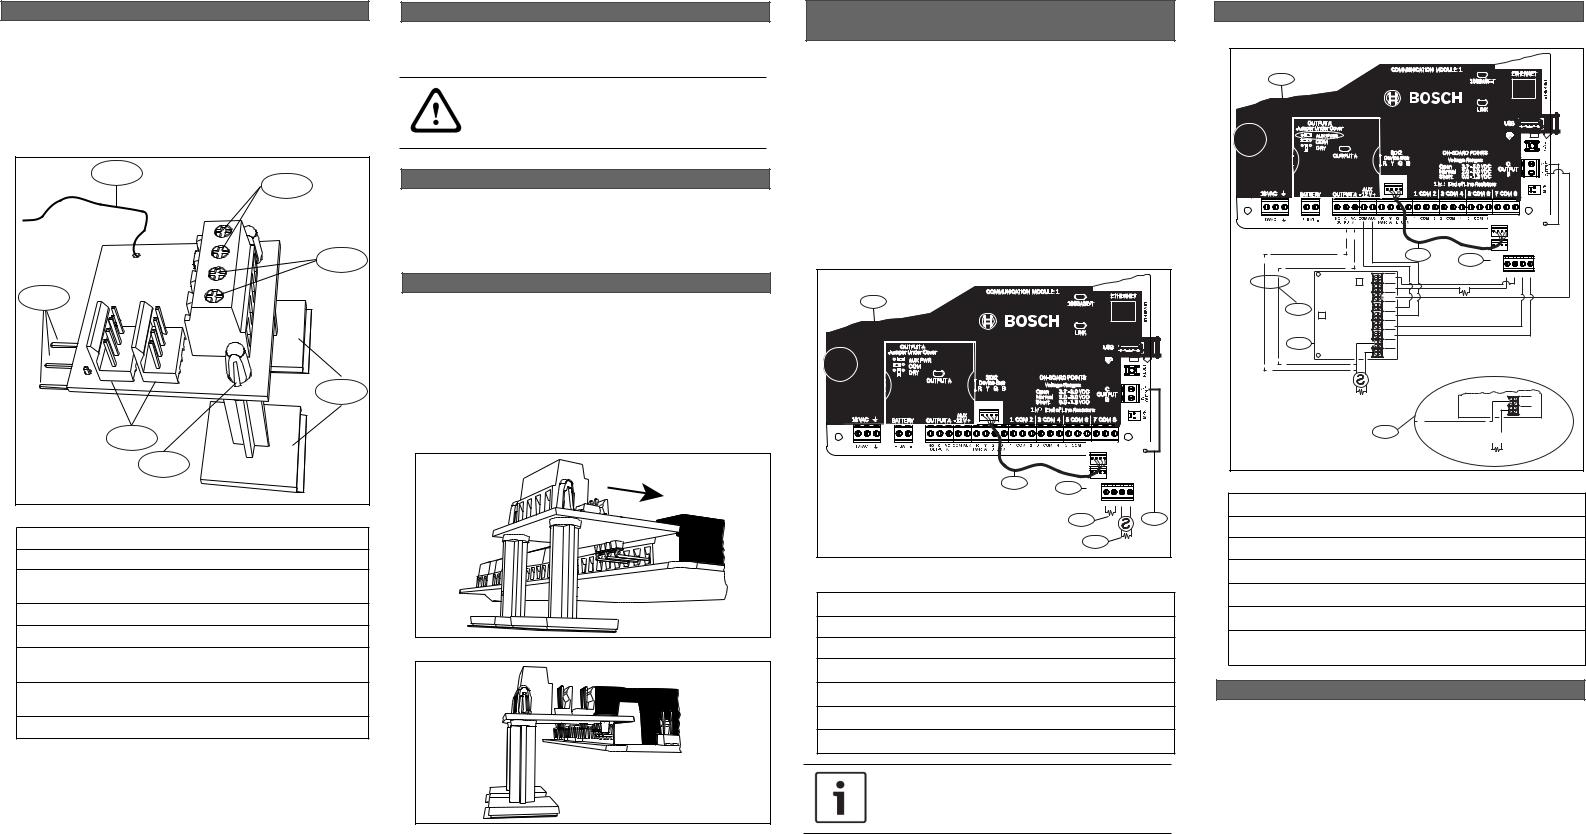 Bosch B201 Installation Manual